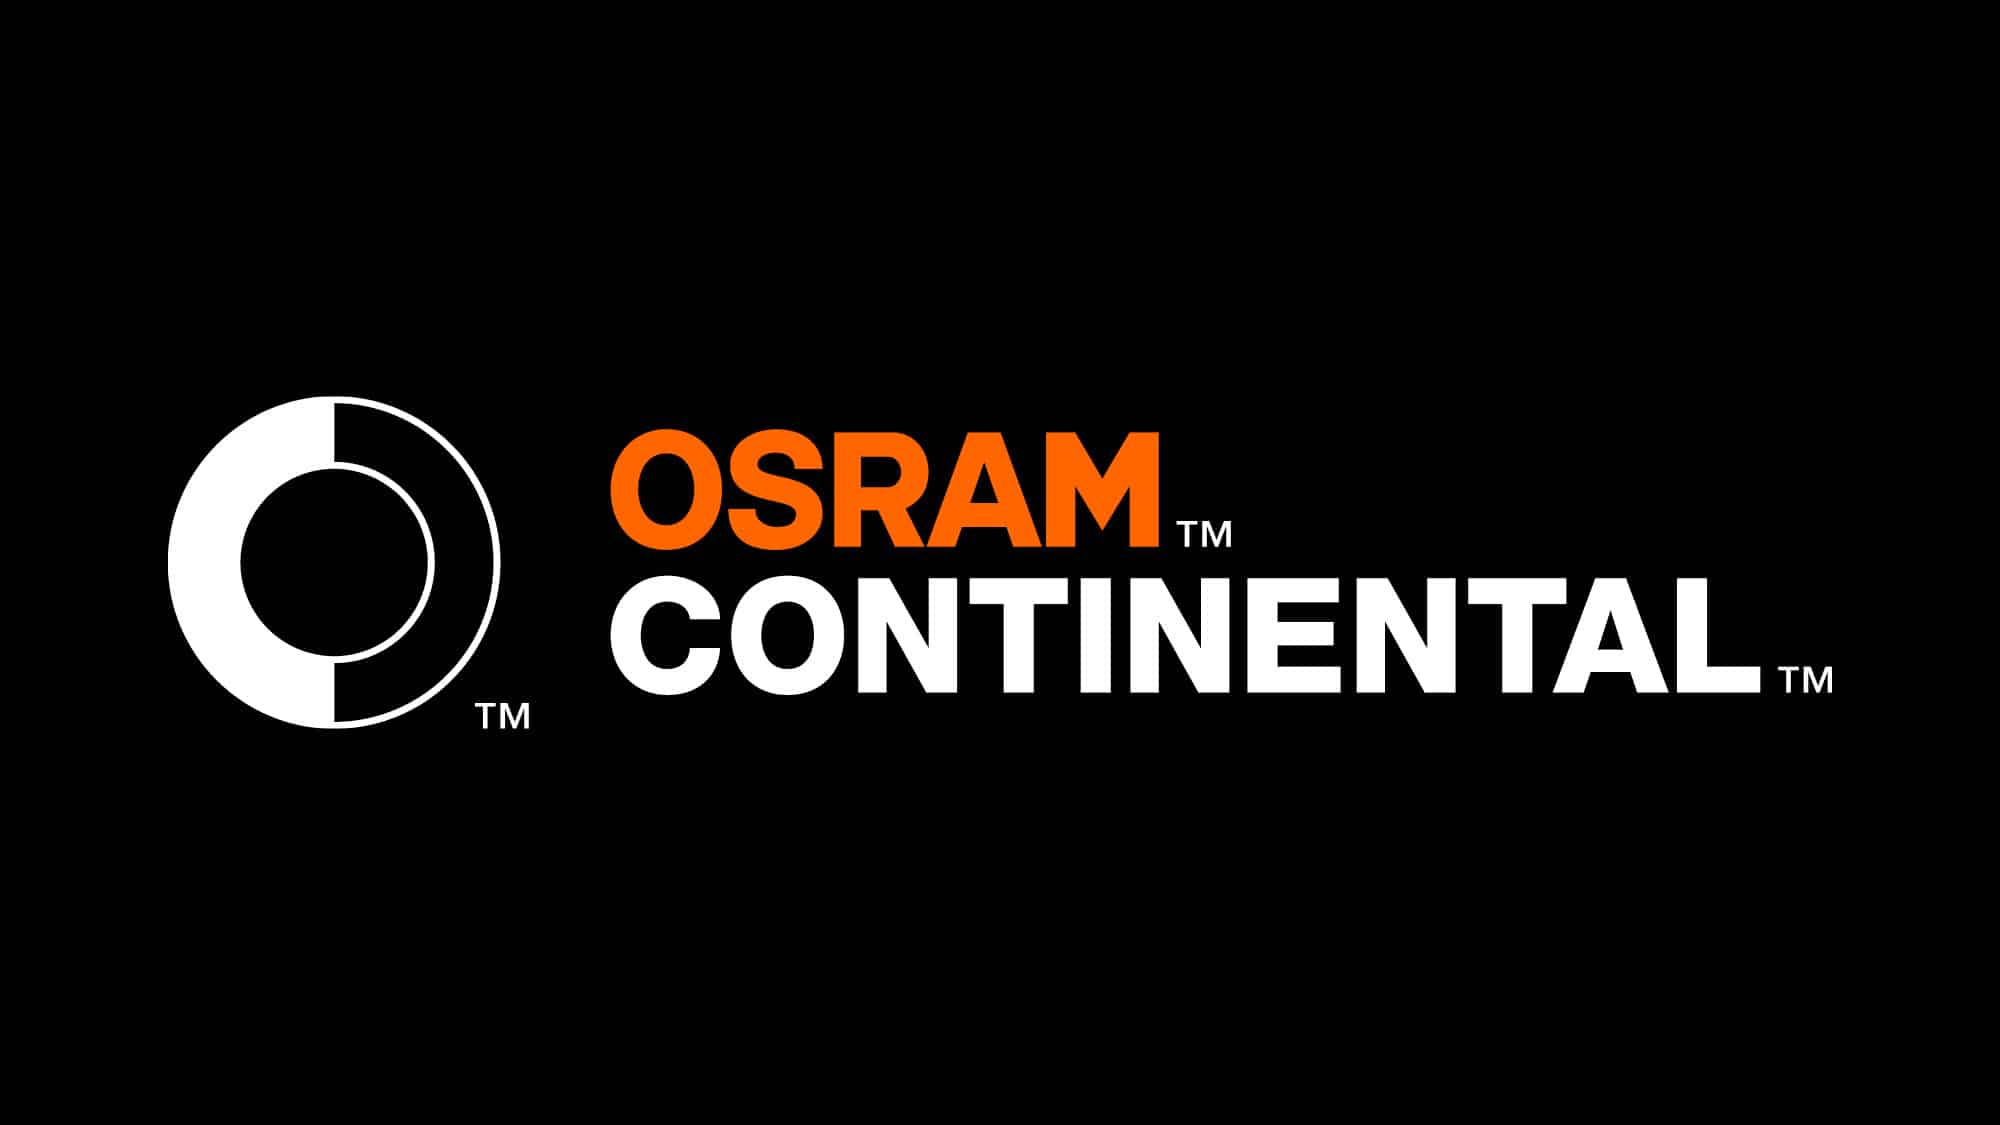 Korona Osram İle Continental'ı Ayırıyor